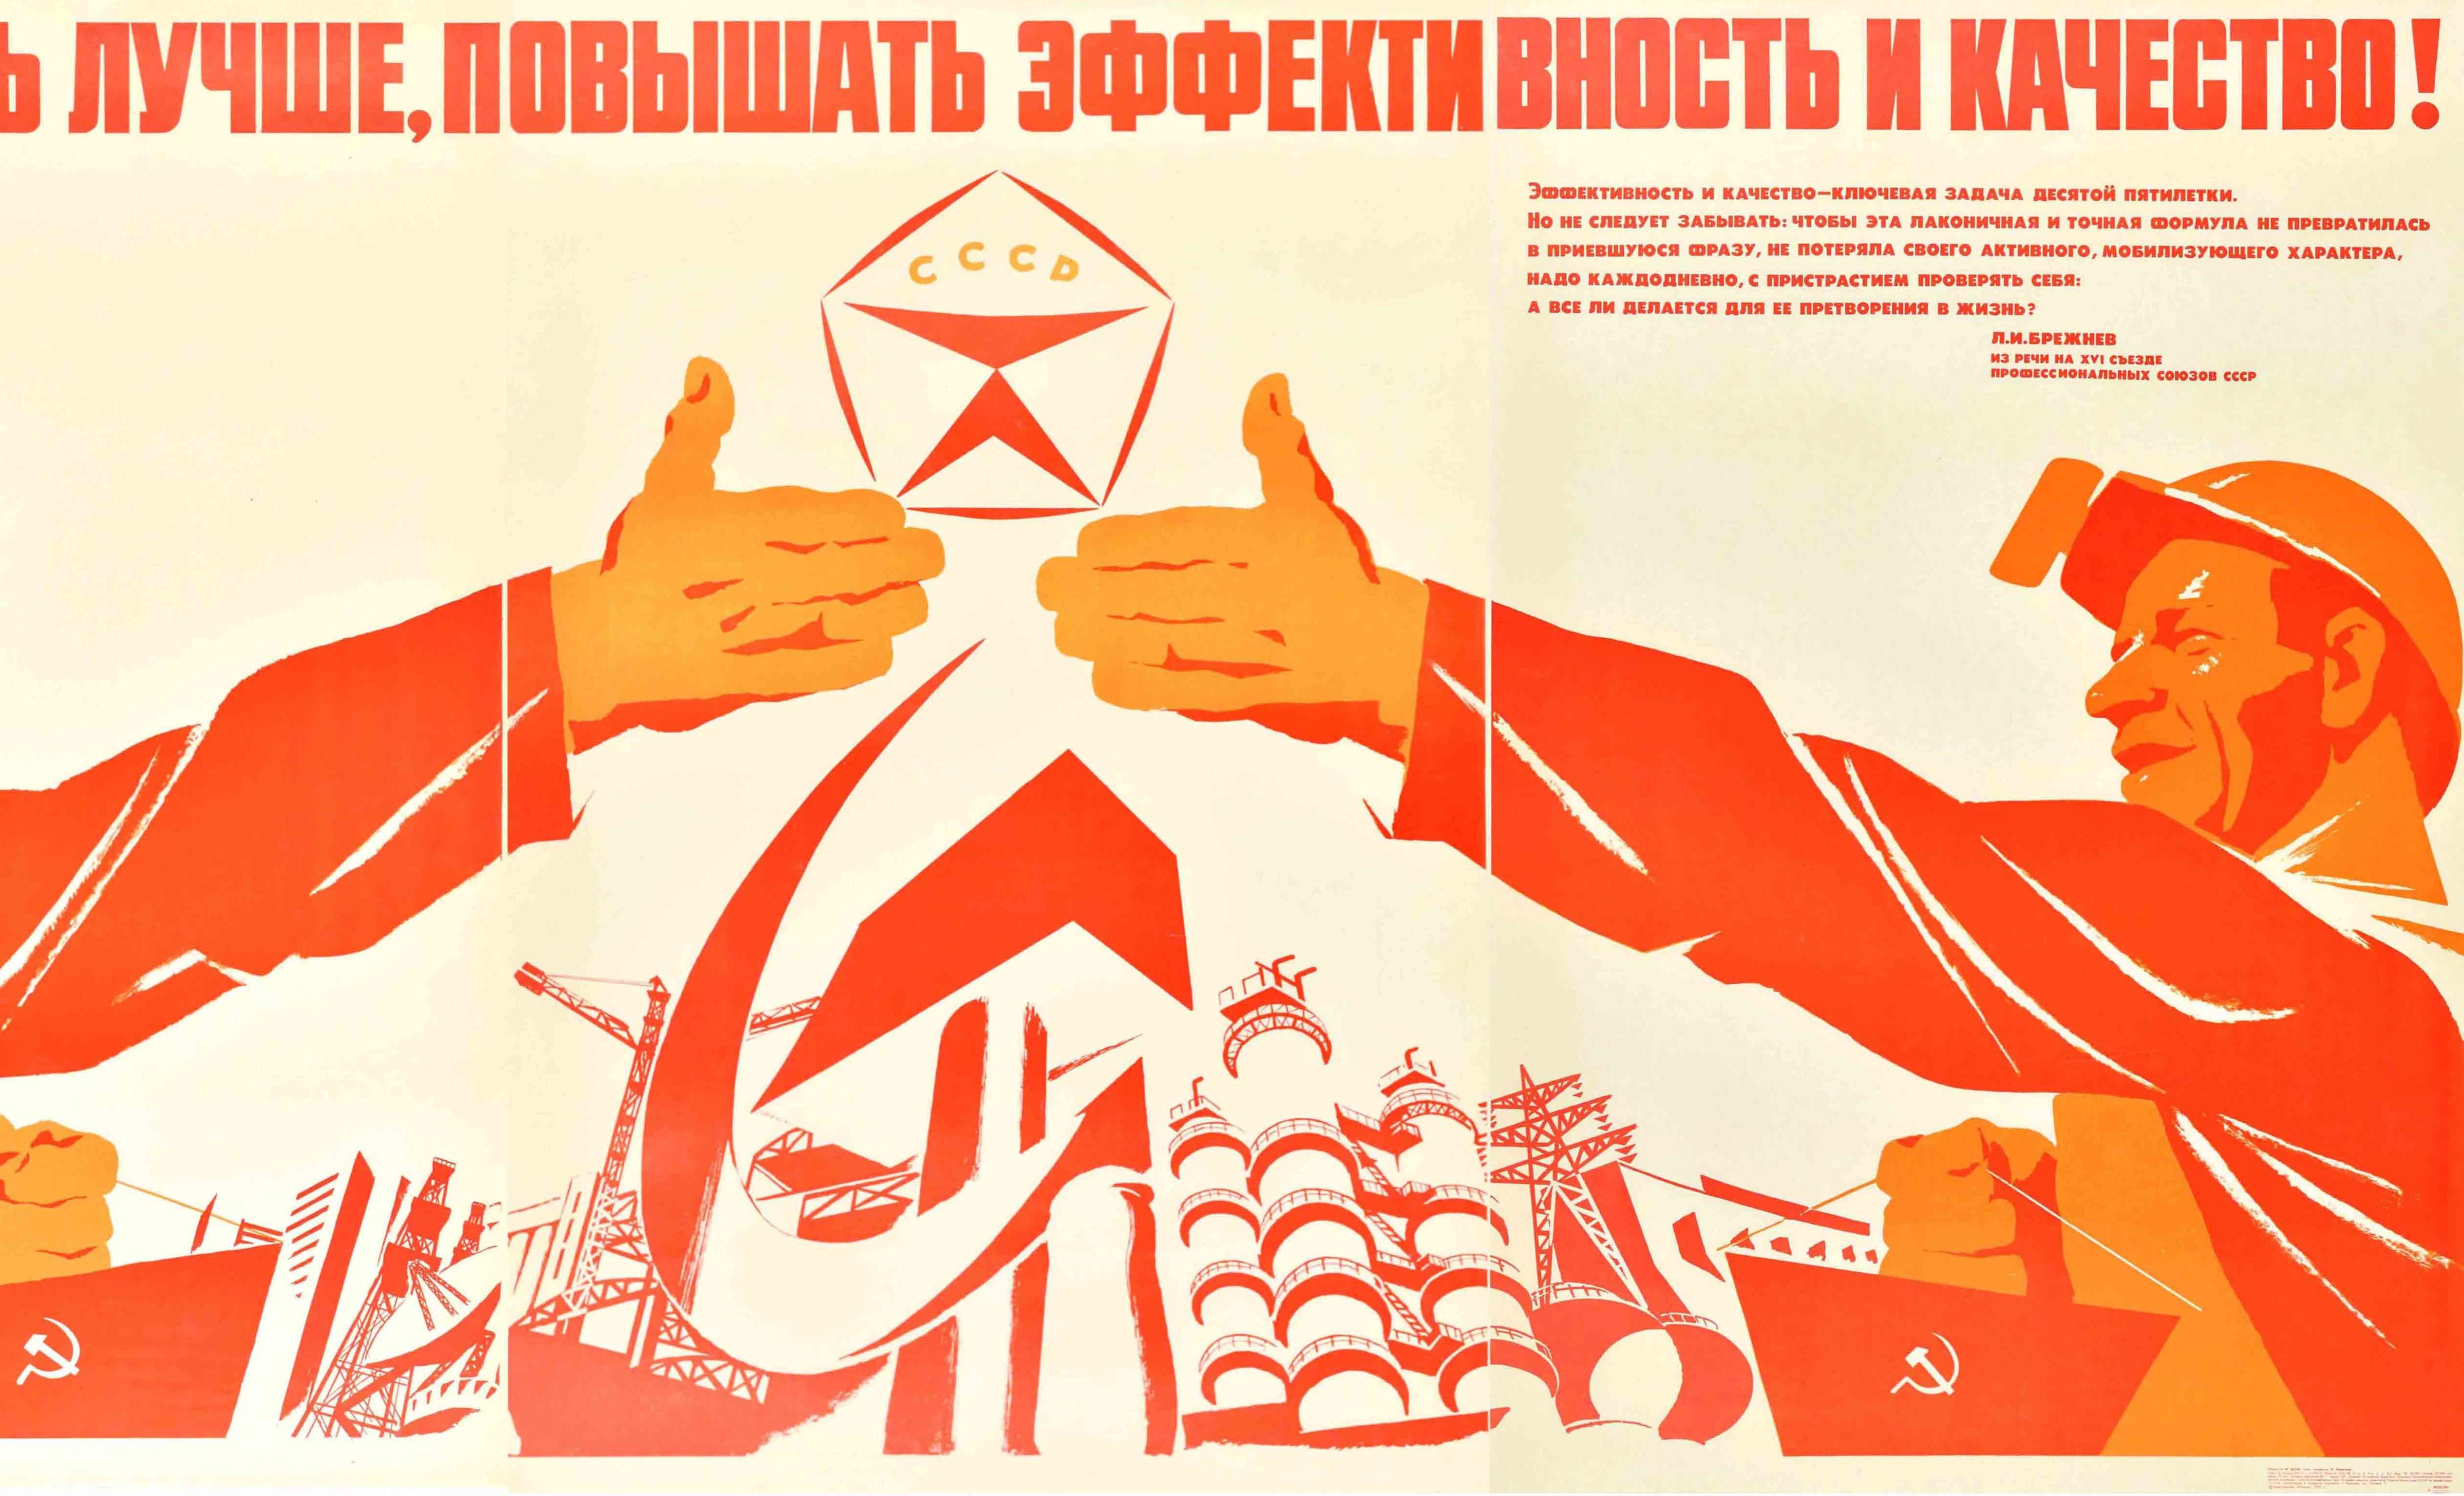 Originales sowjetisches Propagandaplakat im Vintage-Stil mit einem dynamischen Design, das zwei Arbeiter zeigt, die rote Fahnen halten und sich die Hände reichen, mit einem Qualitätssiegel CCCP-Logo in der Mitte über einem Hammer- und Sichel-Emblem